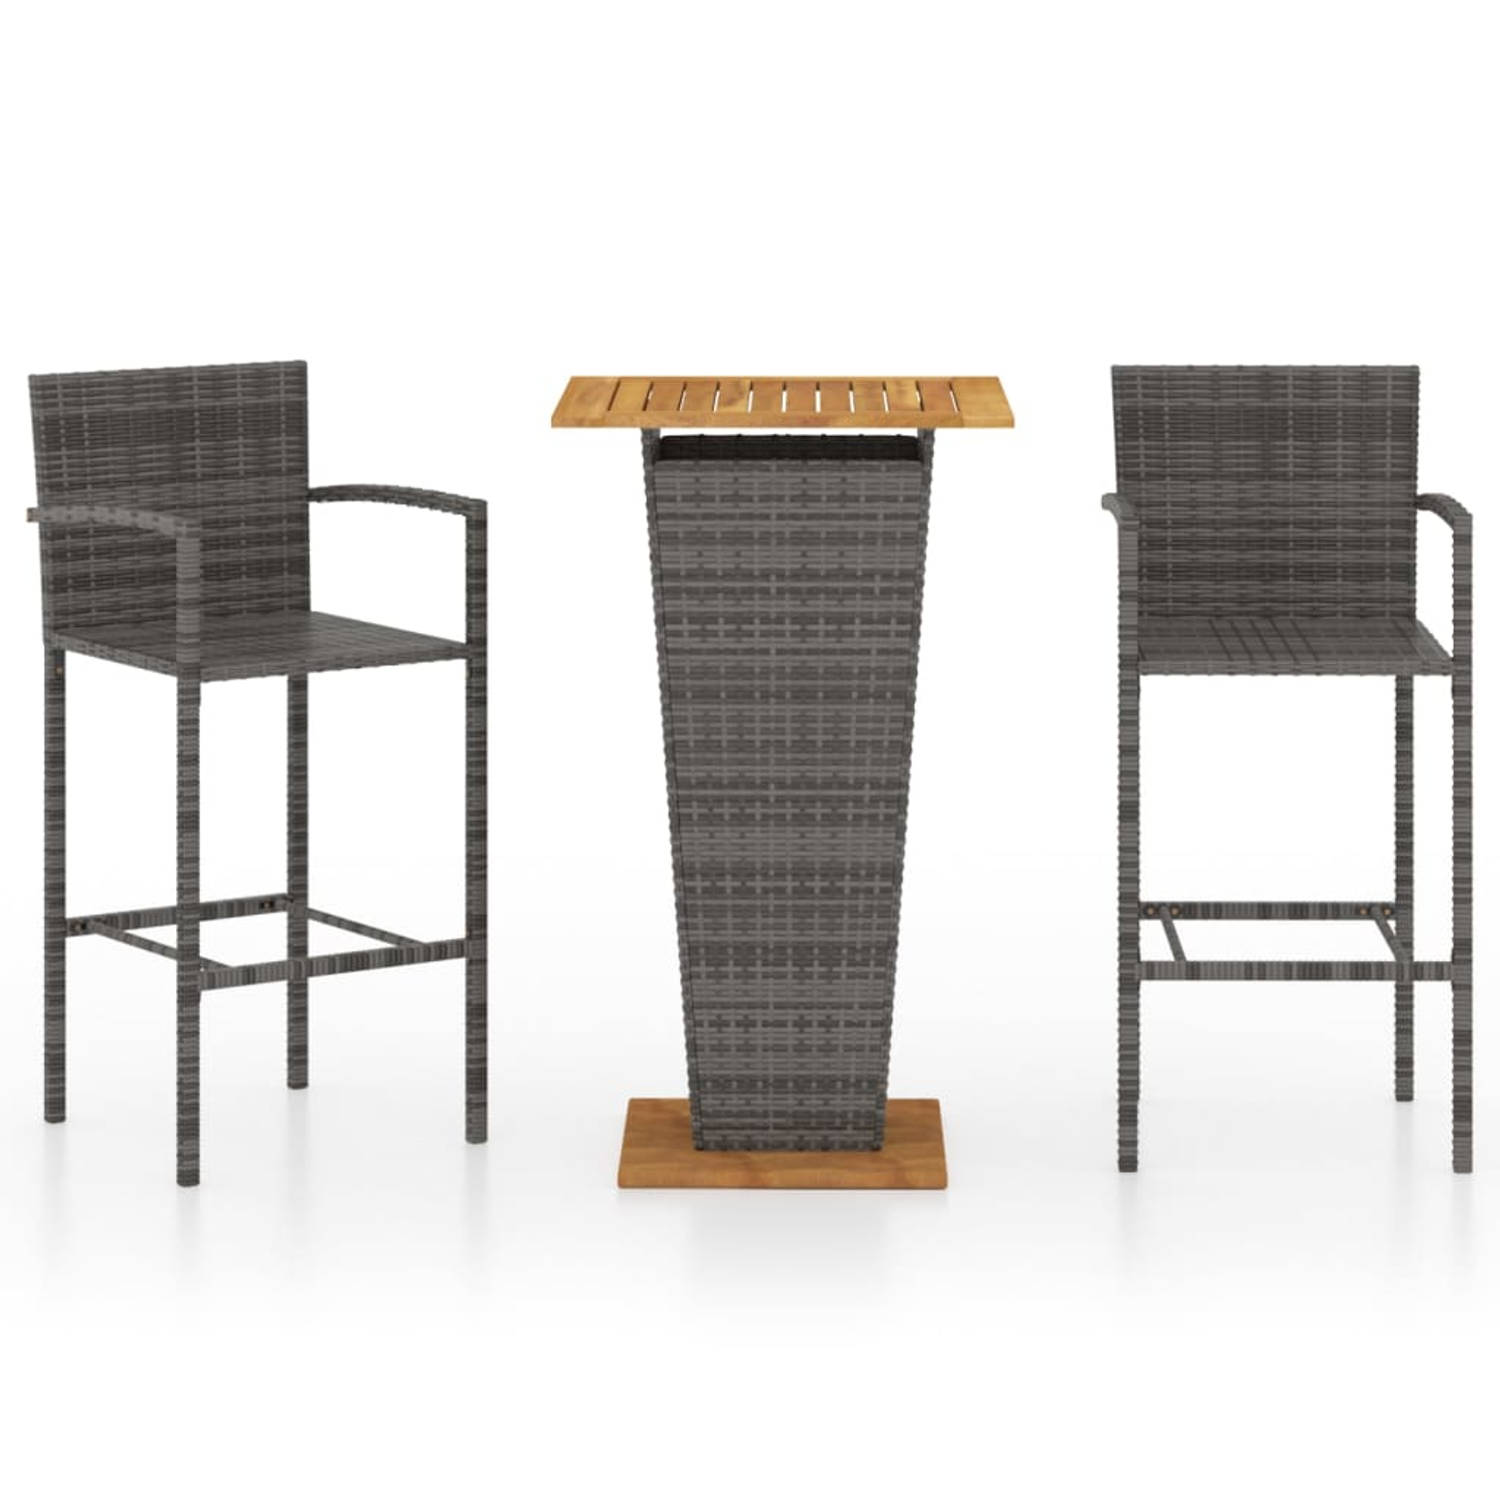 The Living Store Barset Grijs - Tafel- 60 x 60 x 110 cm (L x B x H) - Stoel- 52 x 56 x 118 cm (B x D x H) - PE-rattan en gepoedercoat staal - Montage vereist - 1 tafel en 2 stoelen